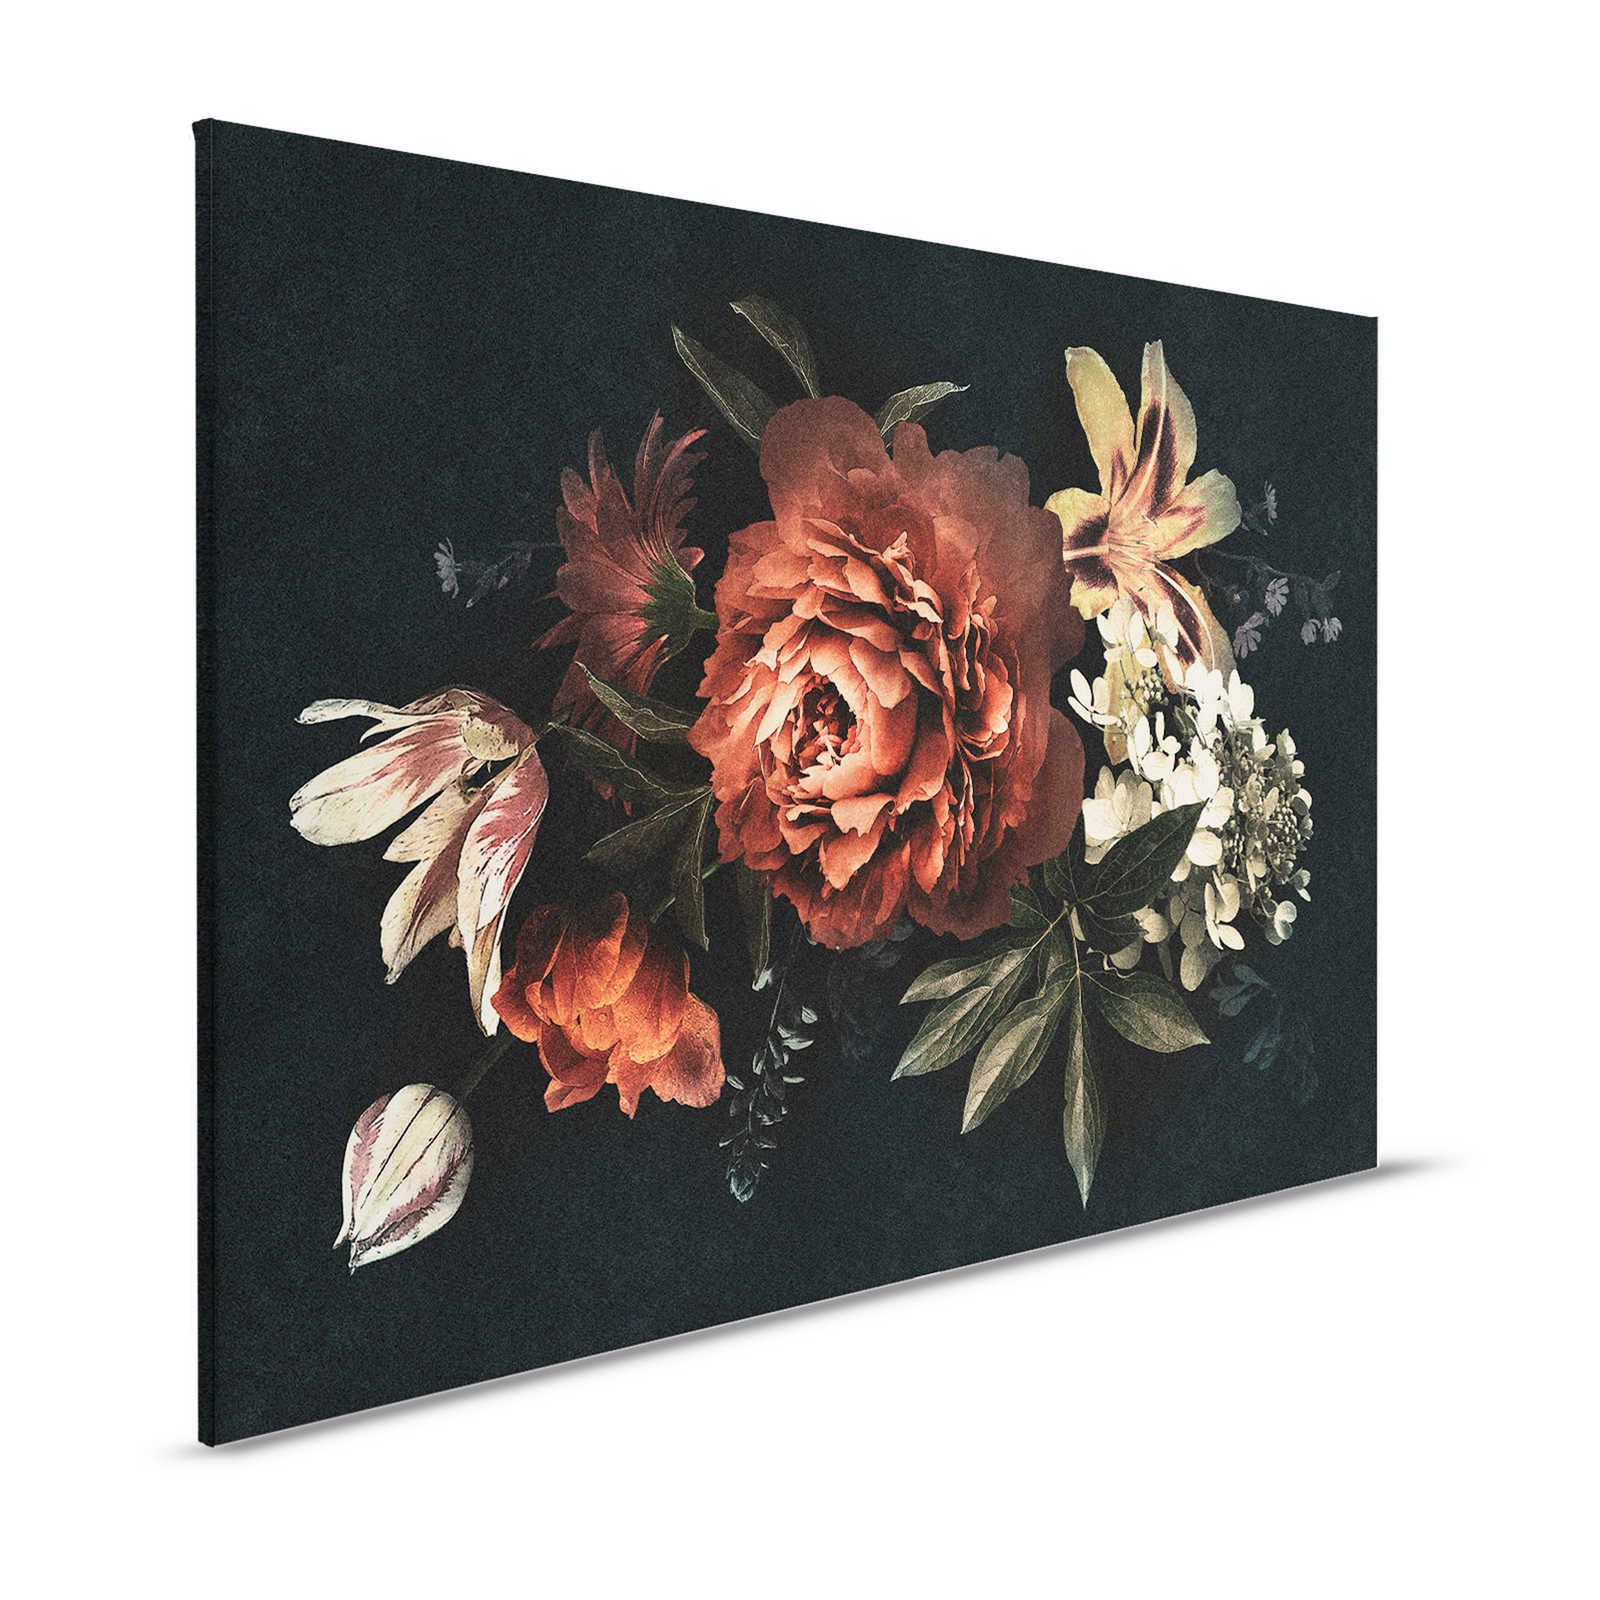 Drama queen 1 - Quadro su tela con bouquet di fiori e sfondo scuro - 1,20 m x 0,80 m
